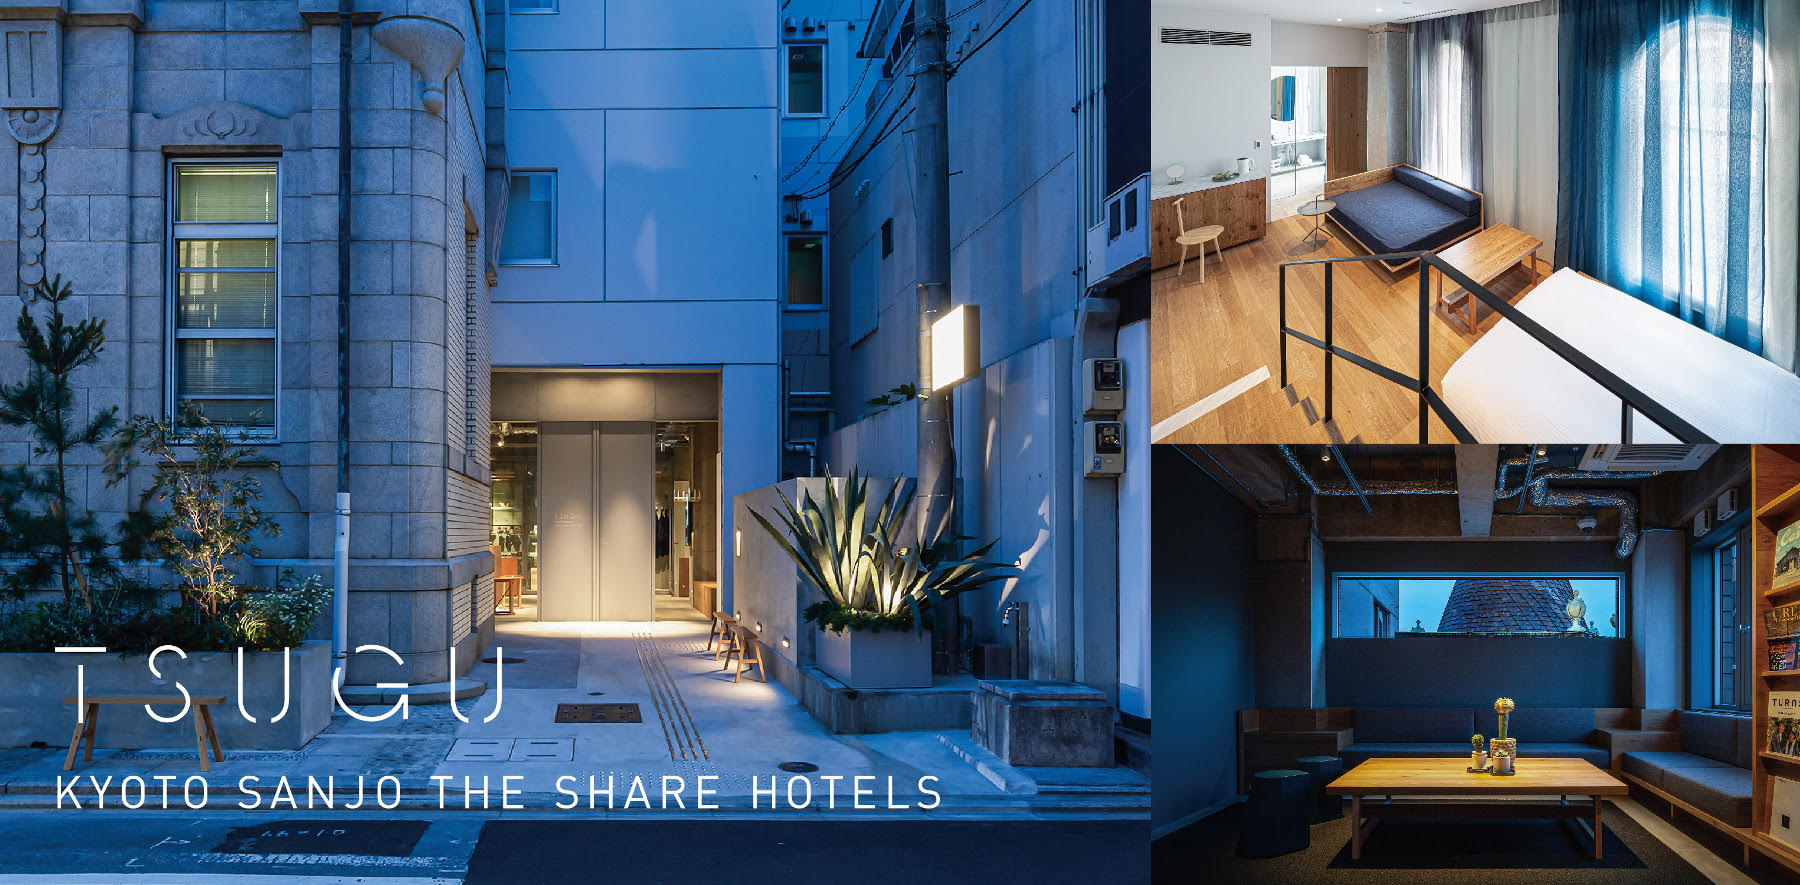 築105年の登録有形文化財を含む建物をリノベーション Tsugu 京都三条 The Share Hotels 5 31 金 グランドオープン 株式会社リビタのプレスリリース